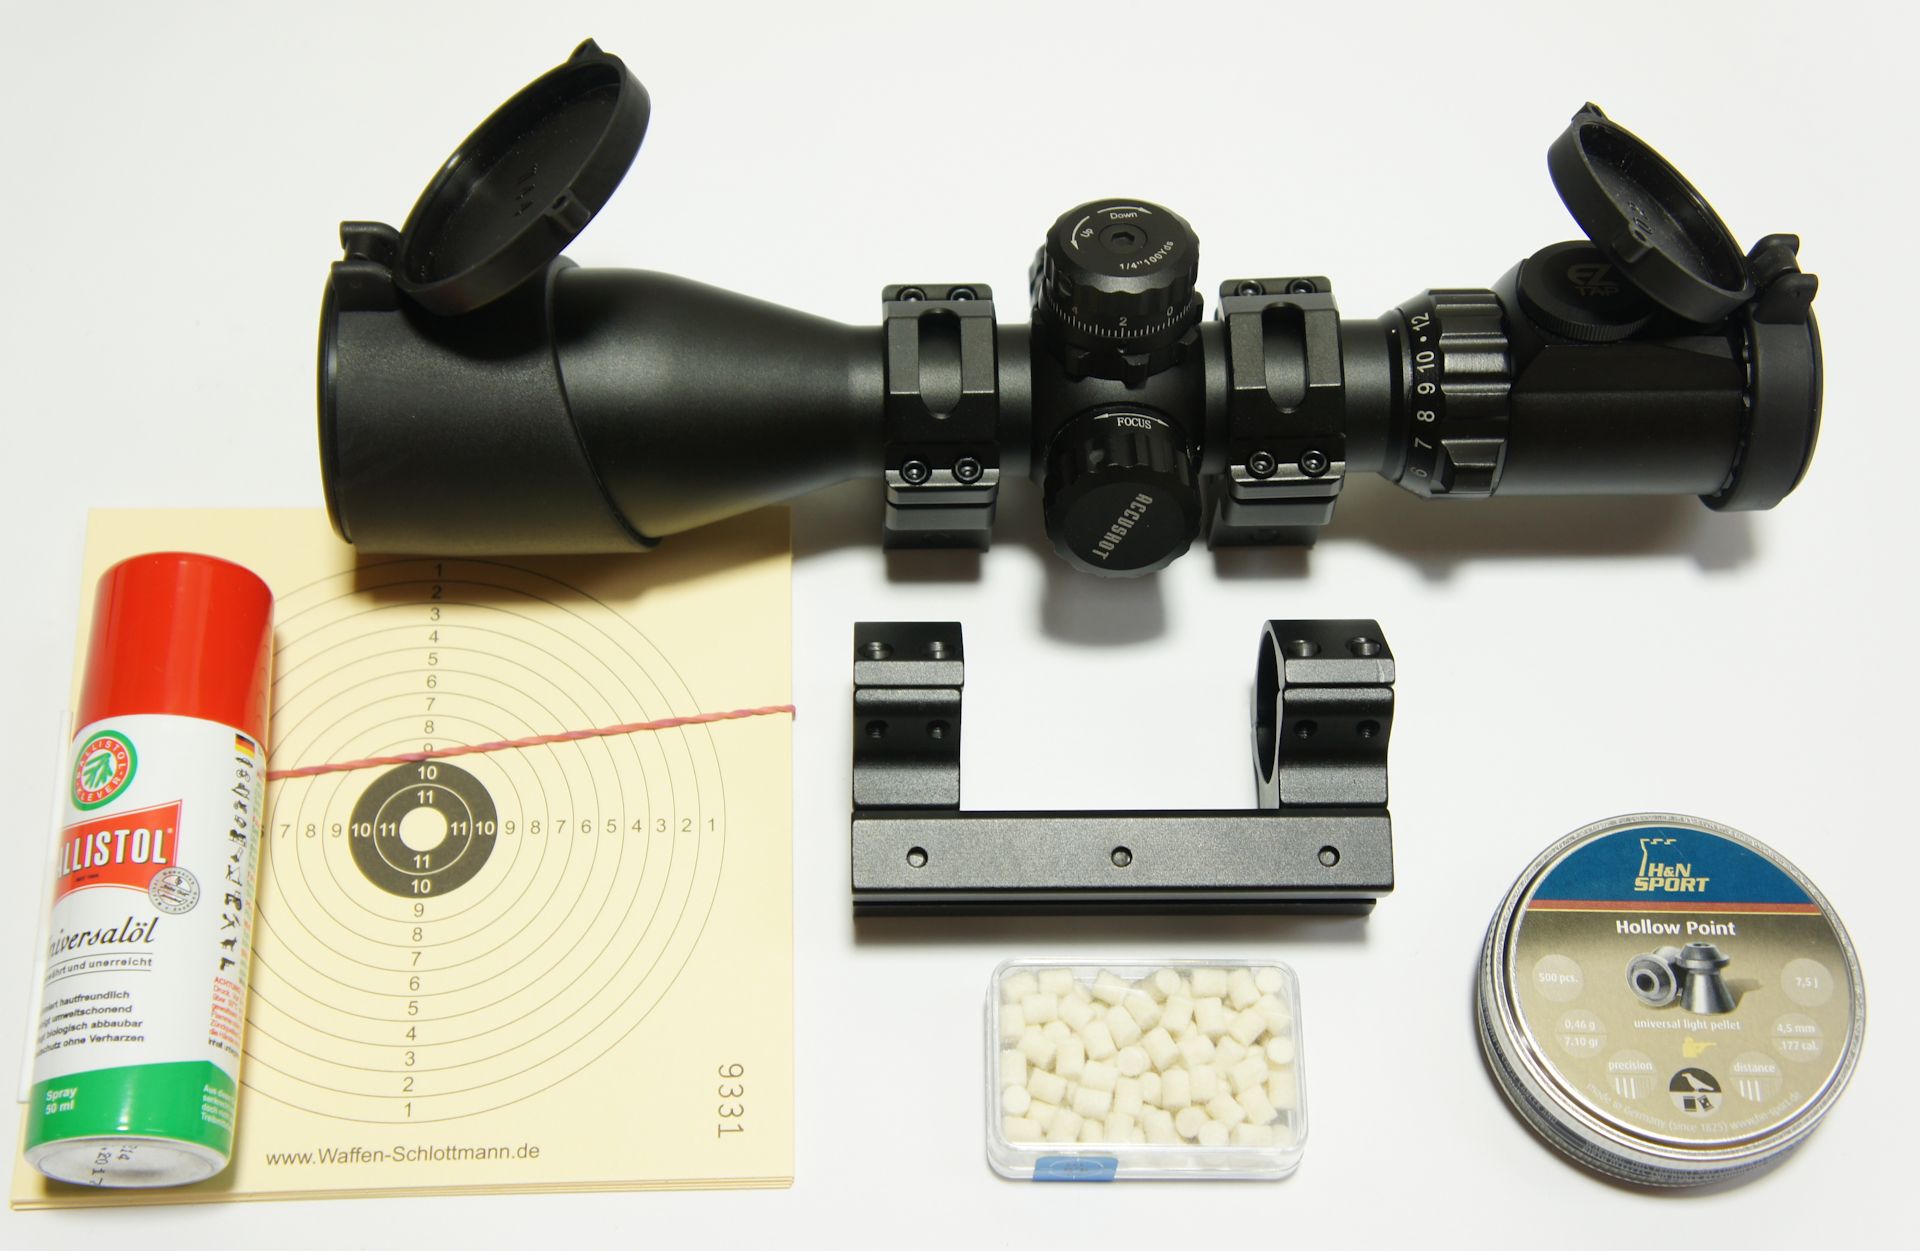 RTU Erweiterungs-Set mit Zielfernrohr UTG Compact 3-12x44 am Luftgewehr HW 77 + inkl. Montage und Einschieen